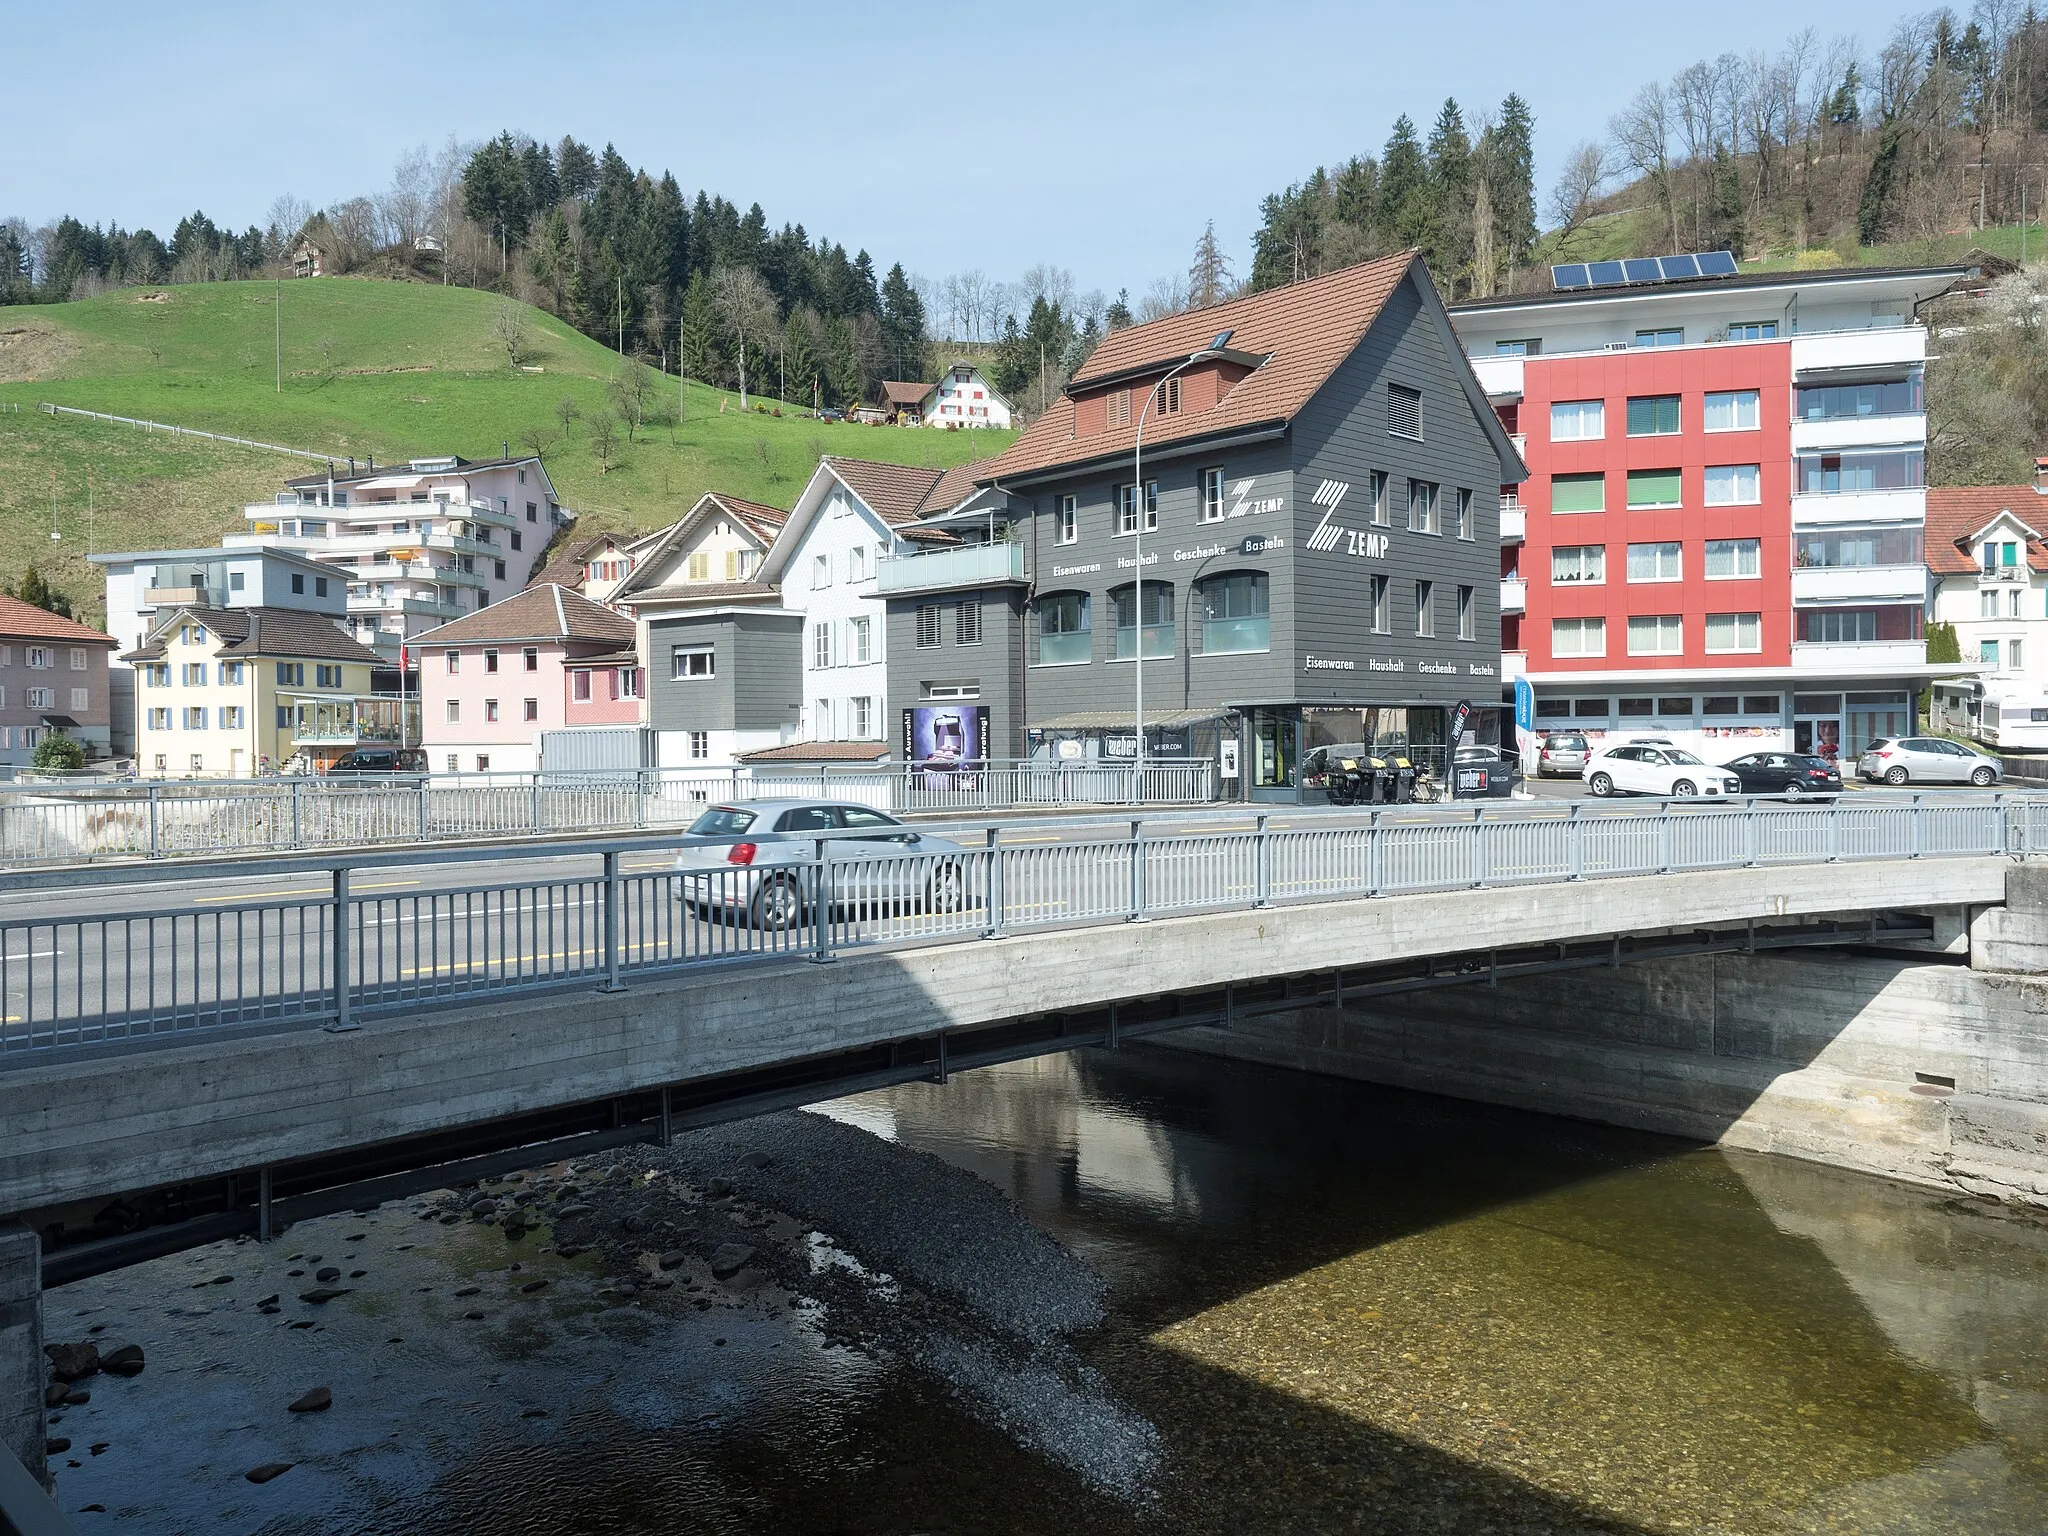 Image of Zentralschweiz